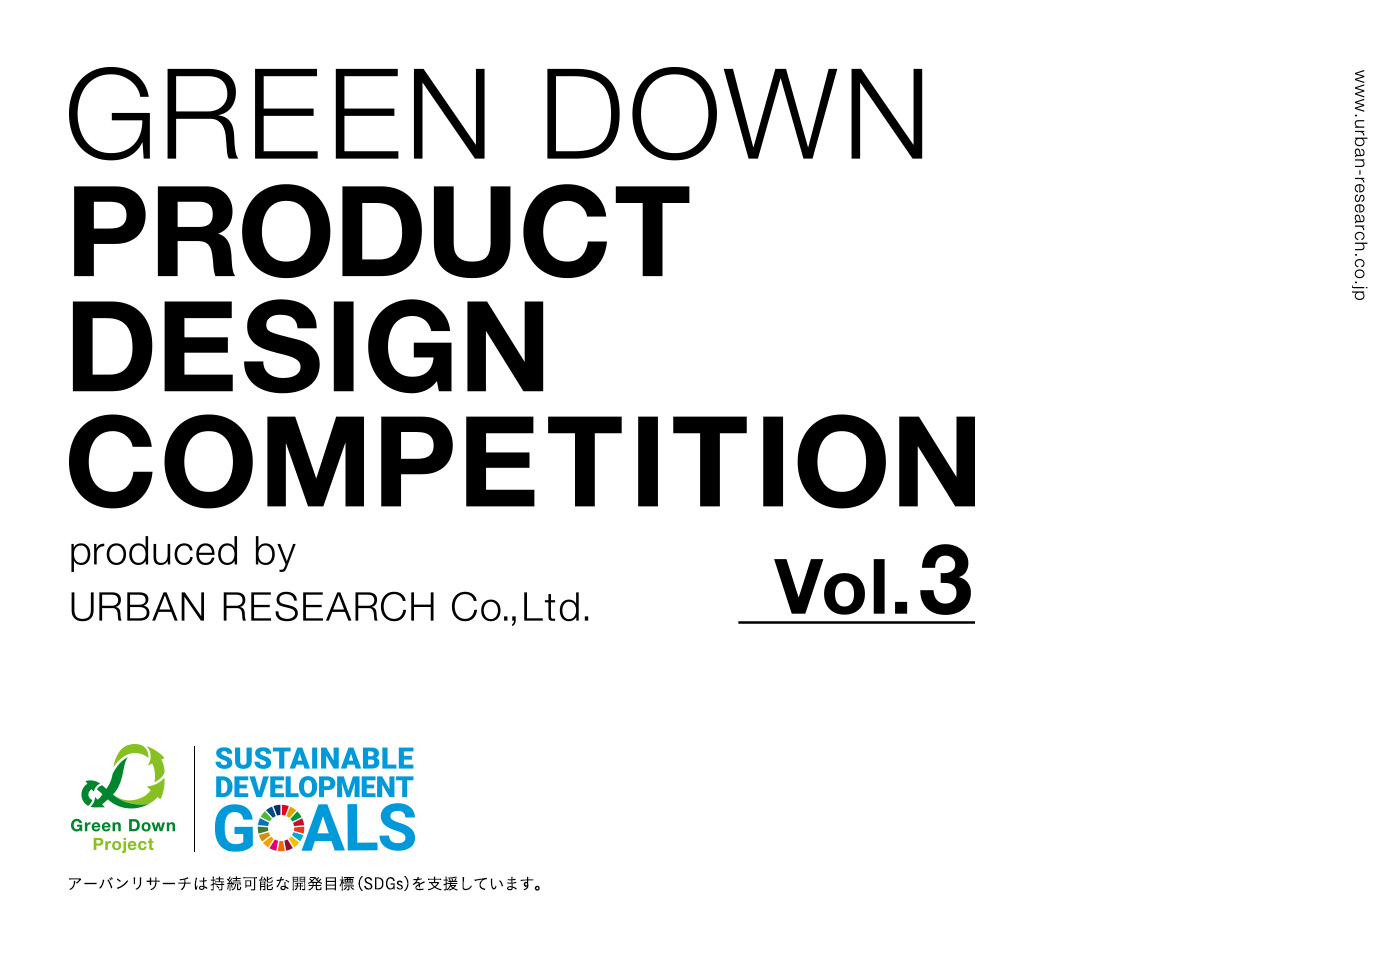 第三回GREEN DOWN PRODUCT DESIGN COMPETITION 受賞作品発表